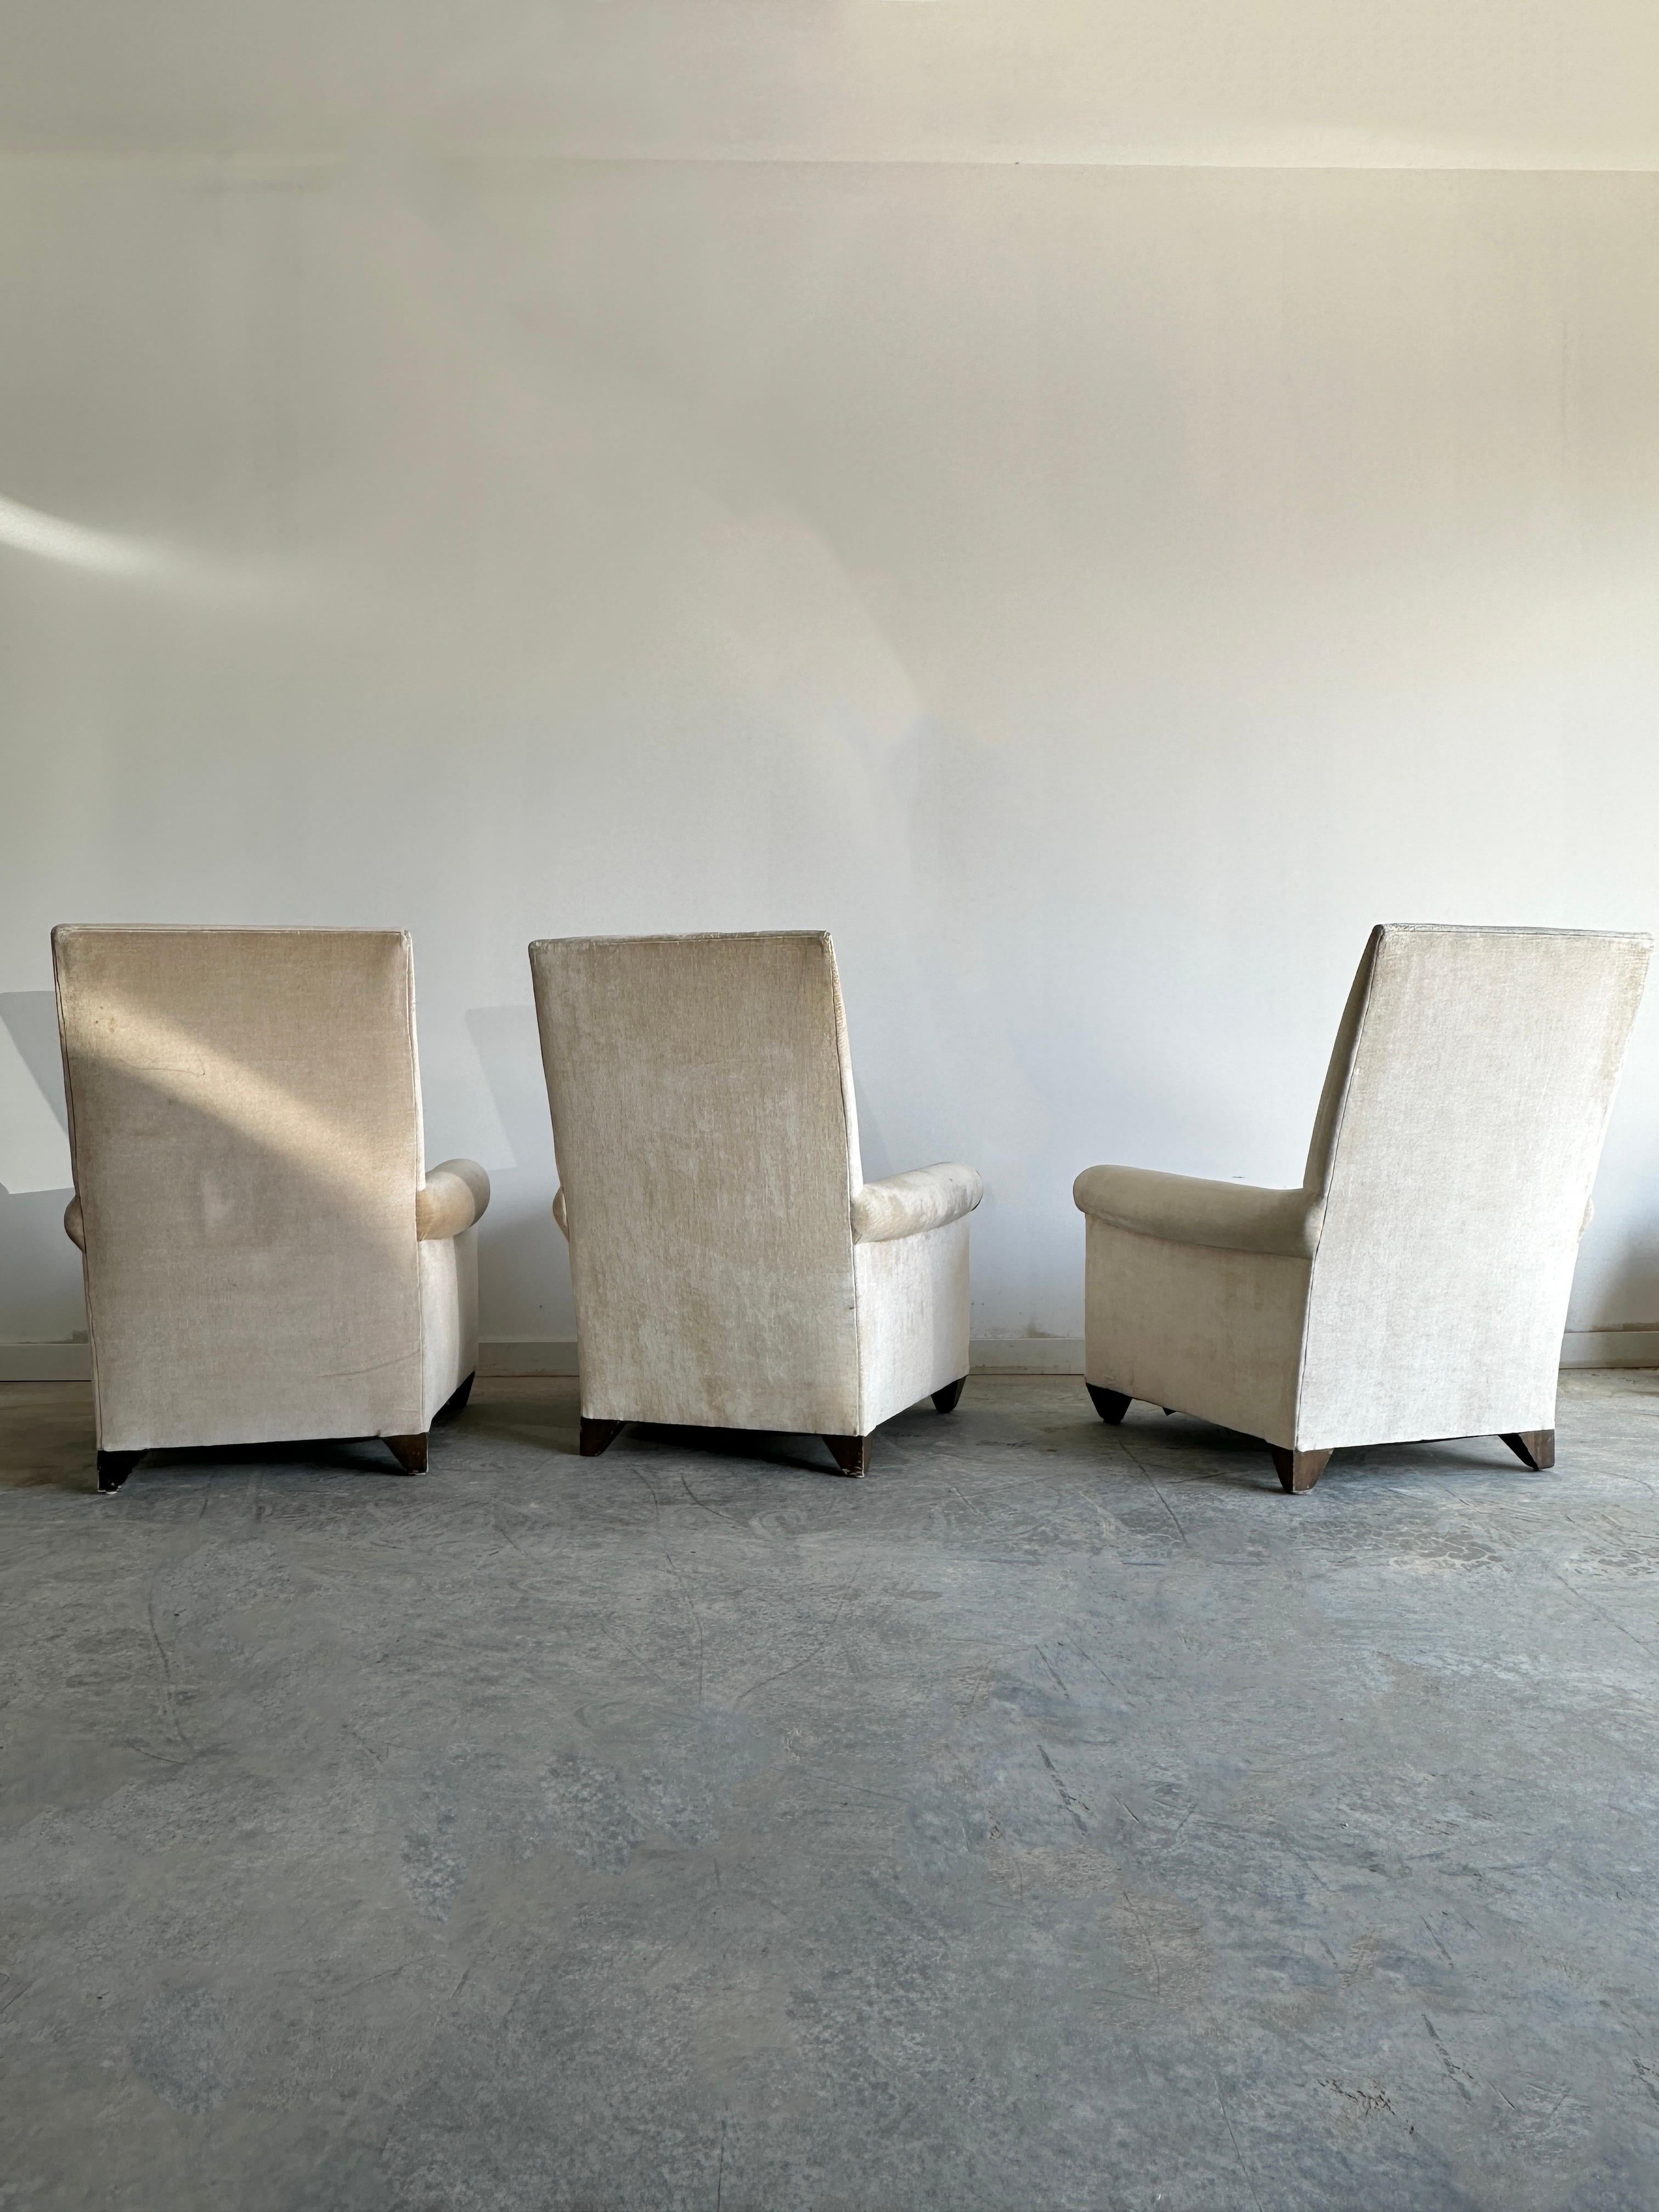 Trois fauteuils élégants et très confortables, dotés de coussins profonds, d'un dossier haut et d'un tissu en velours texturé de haute qualité. Les chaises ont un design épuré et moderne qui reflète le style de leur créateur, Angelo Donghia, connu